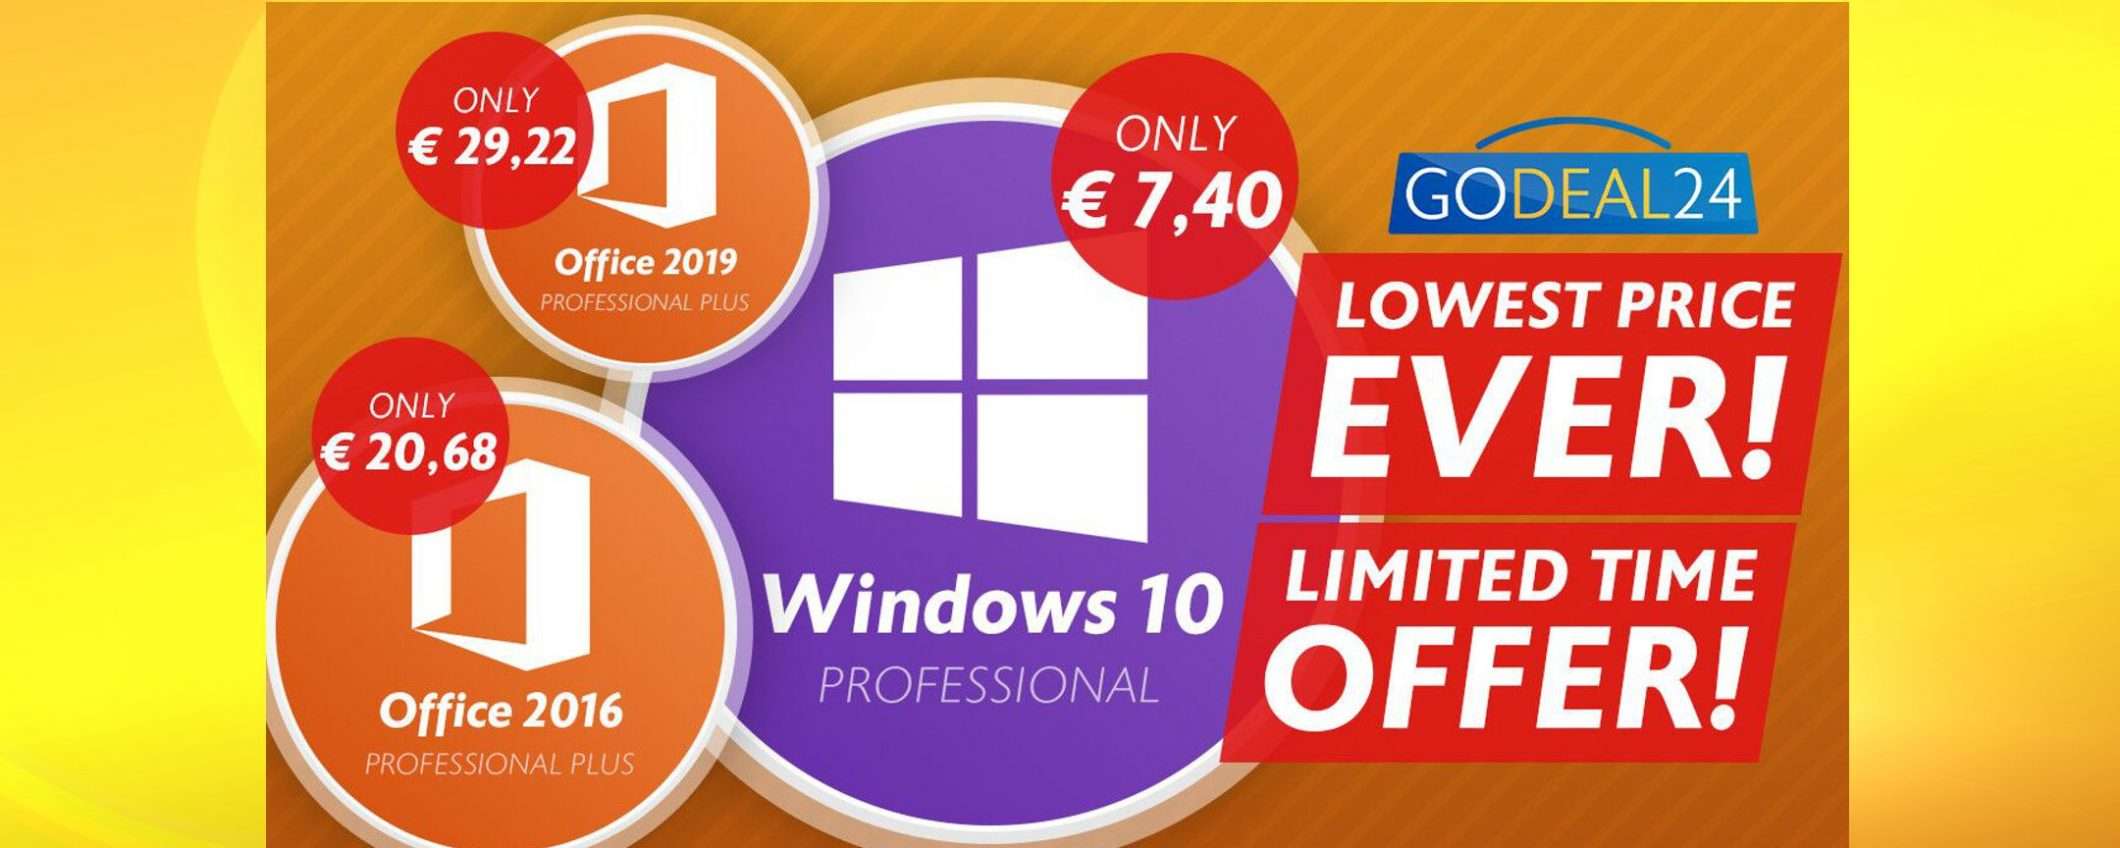 Windows 10 a meno di 7.40€ con GoDeal24